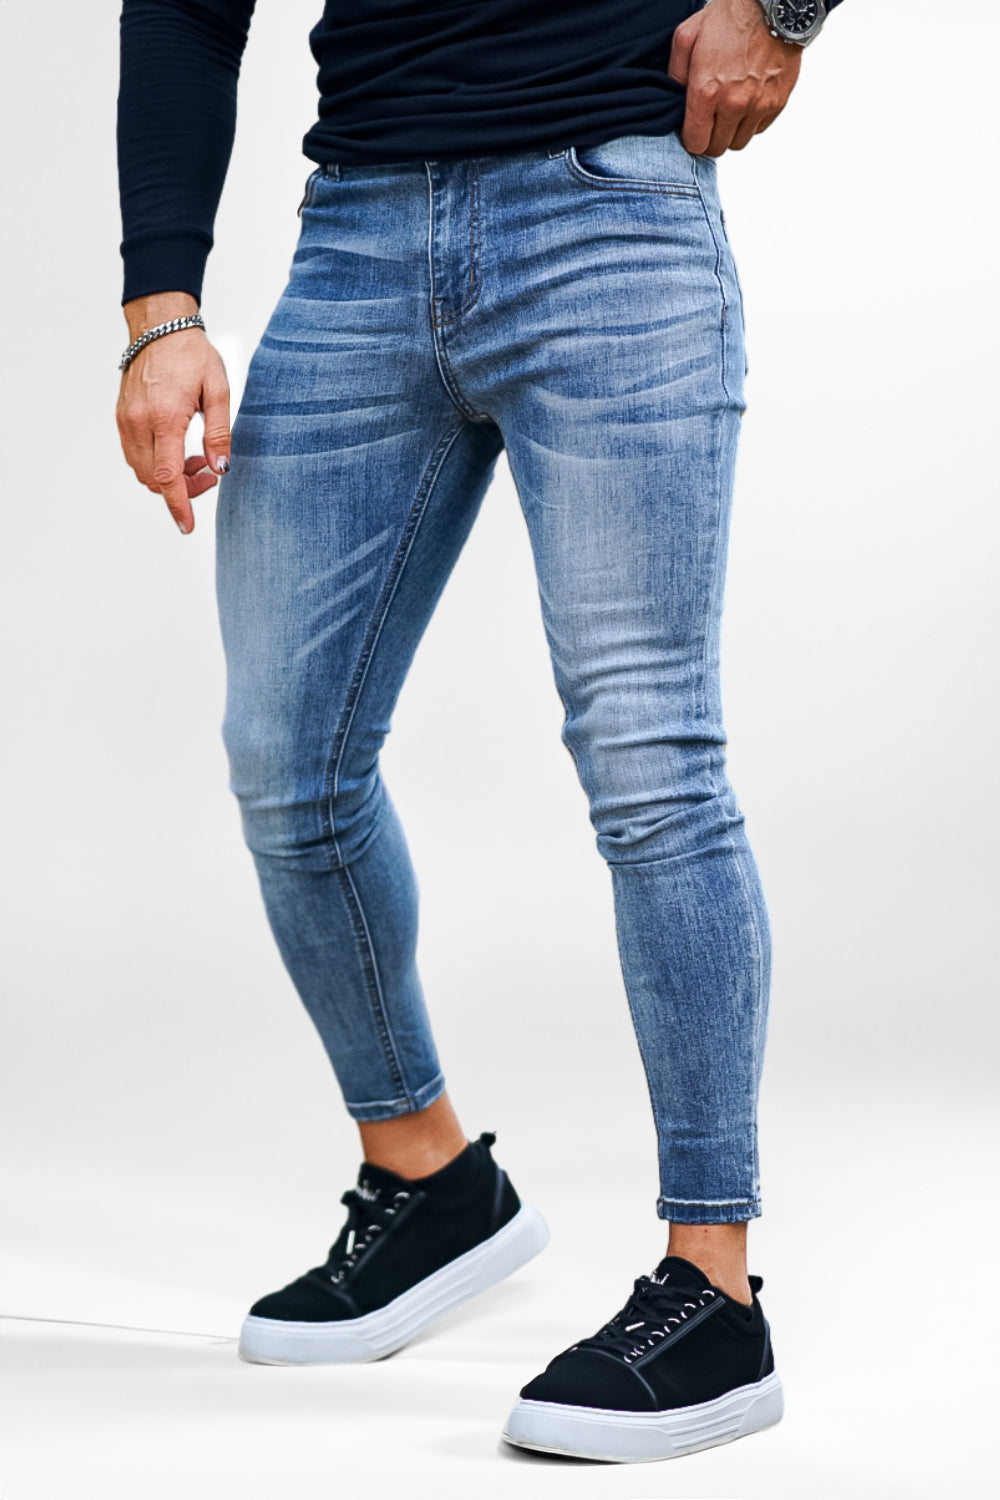 Mittelblaue Skinny Fit Jeans für Herren|50% Rabatt|Skinny Jeans|Skinny  Jeans für Herren|Herren Slim Fit Jeans|Stretch-Jeans – GINGTTO